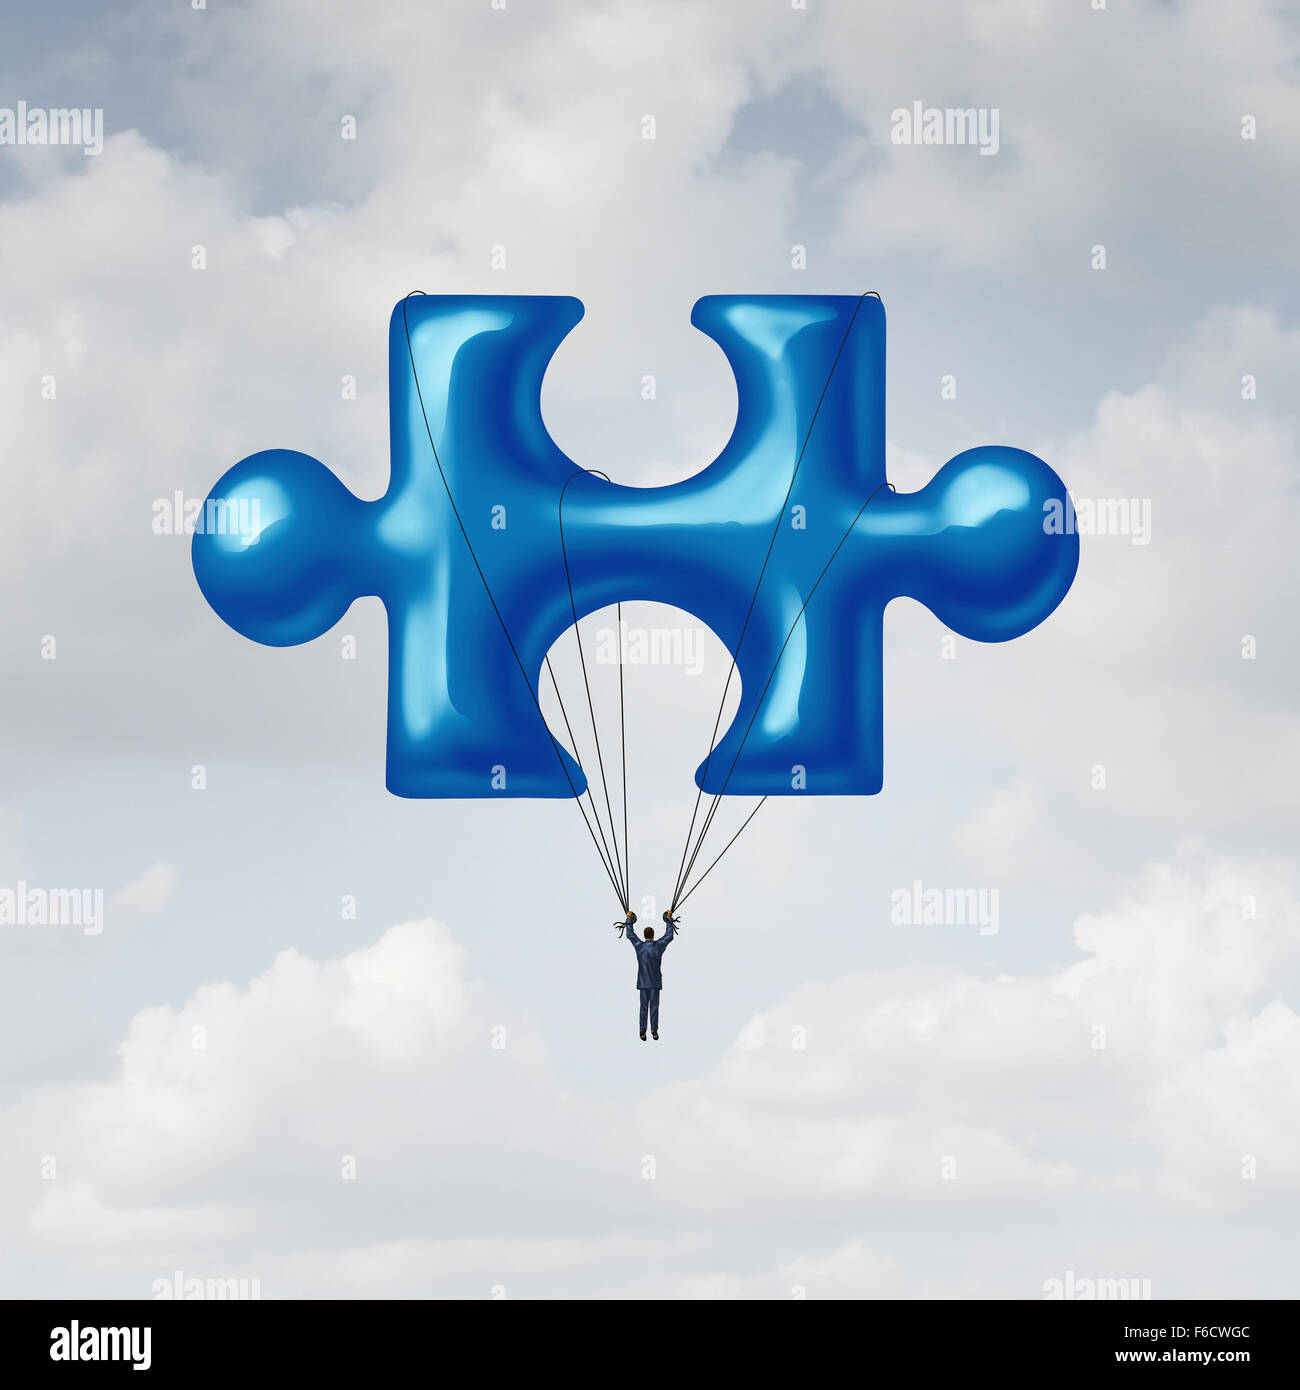 Führung-Jigsaw Puzzle-Konzept als Metapher Lösung mit einem Geschäftsmann mit einem Ballon geformt als Ganzes grundlegend wichtiges Bindeglied zum Abschluss eines Projekts bis in den Himmel schweben. Stockfoto